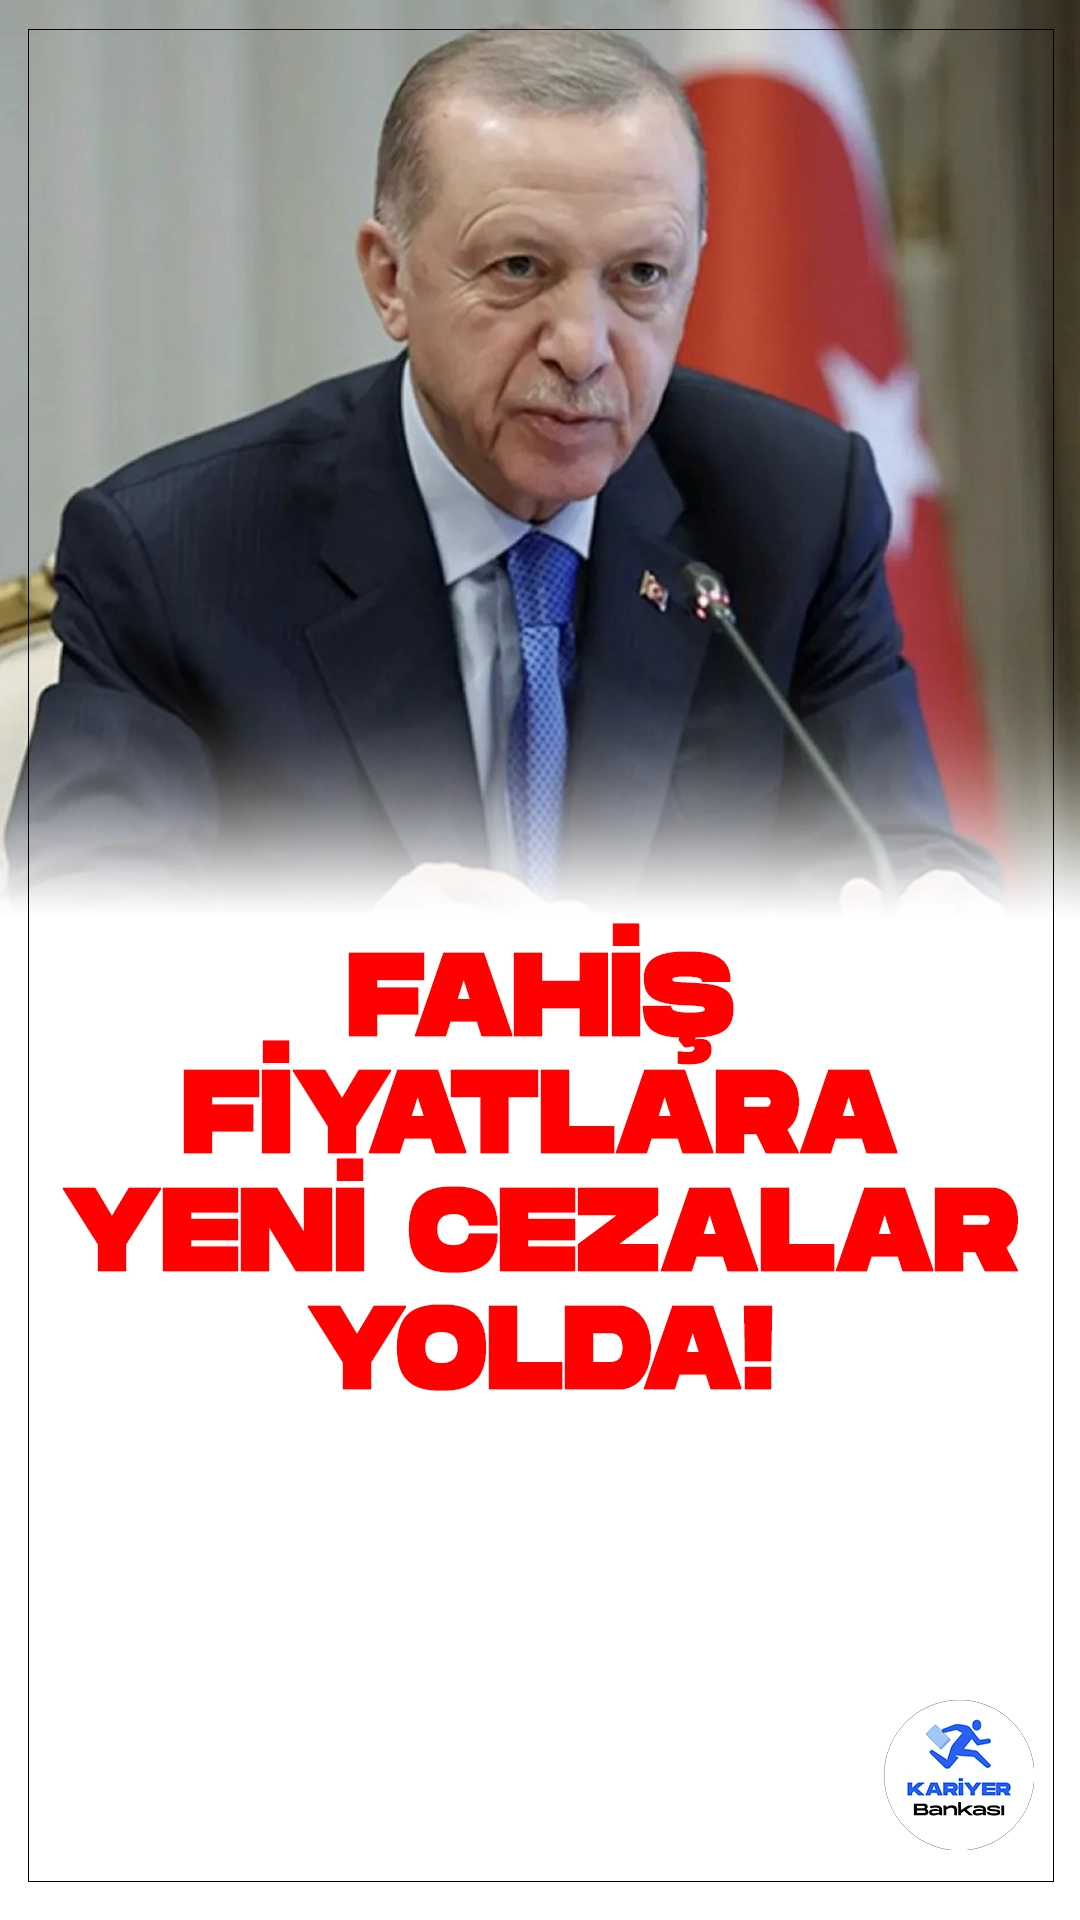 Cumhurbaşkanı Erdoğan'dan Açıklama:Fahiş Fiyatlara Karşı Yeni Cezalar Yolda.Cumhurbaşkanı Recep Tayyip Erdoğan, fahiş fiyatlarla mücadelede yeni ve daha çaydırıcı tedbirler ortaya konacağını belirtti.